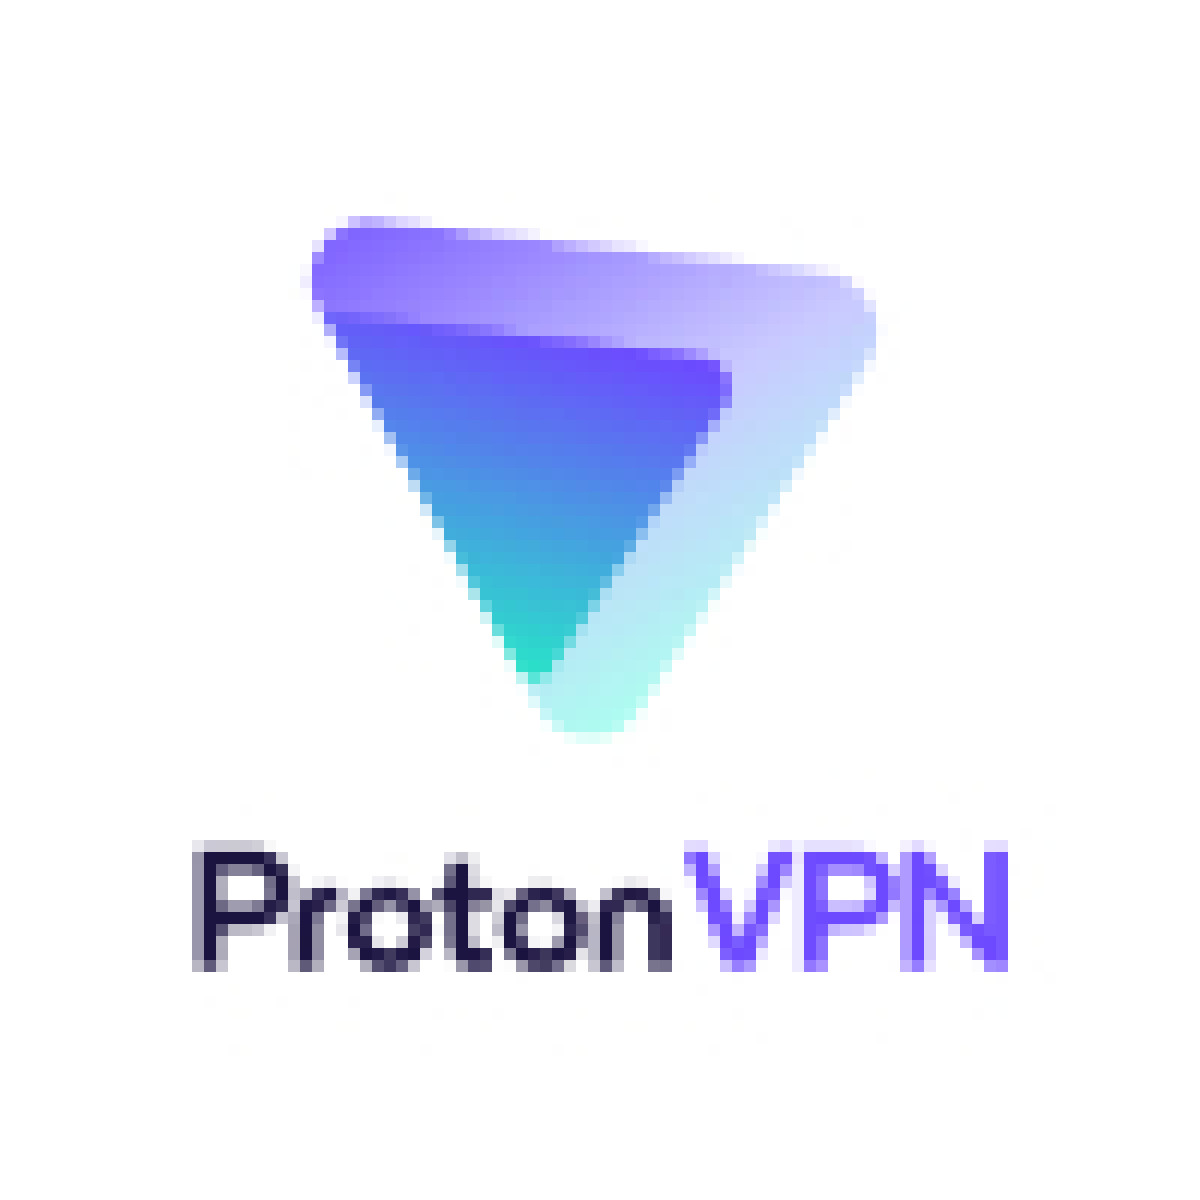 Proton vpn logo